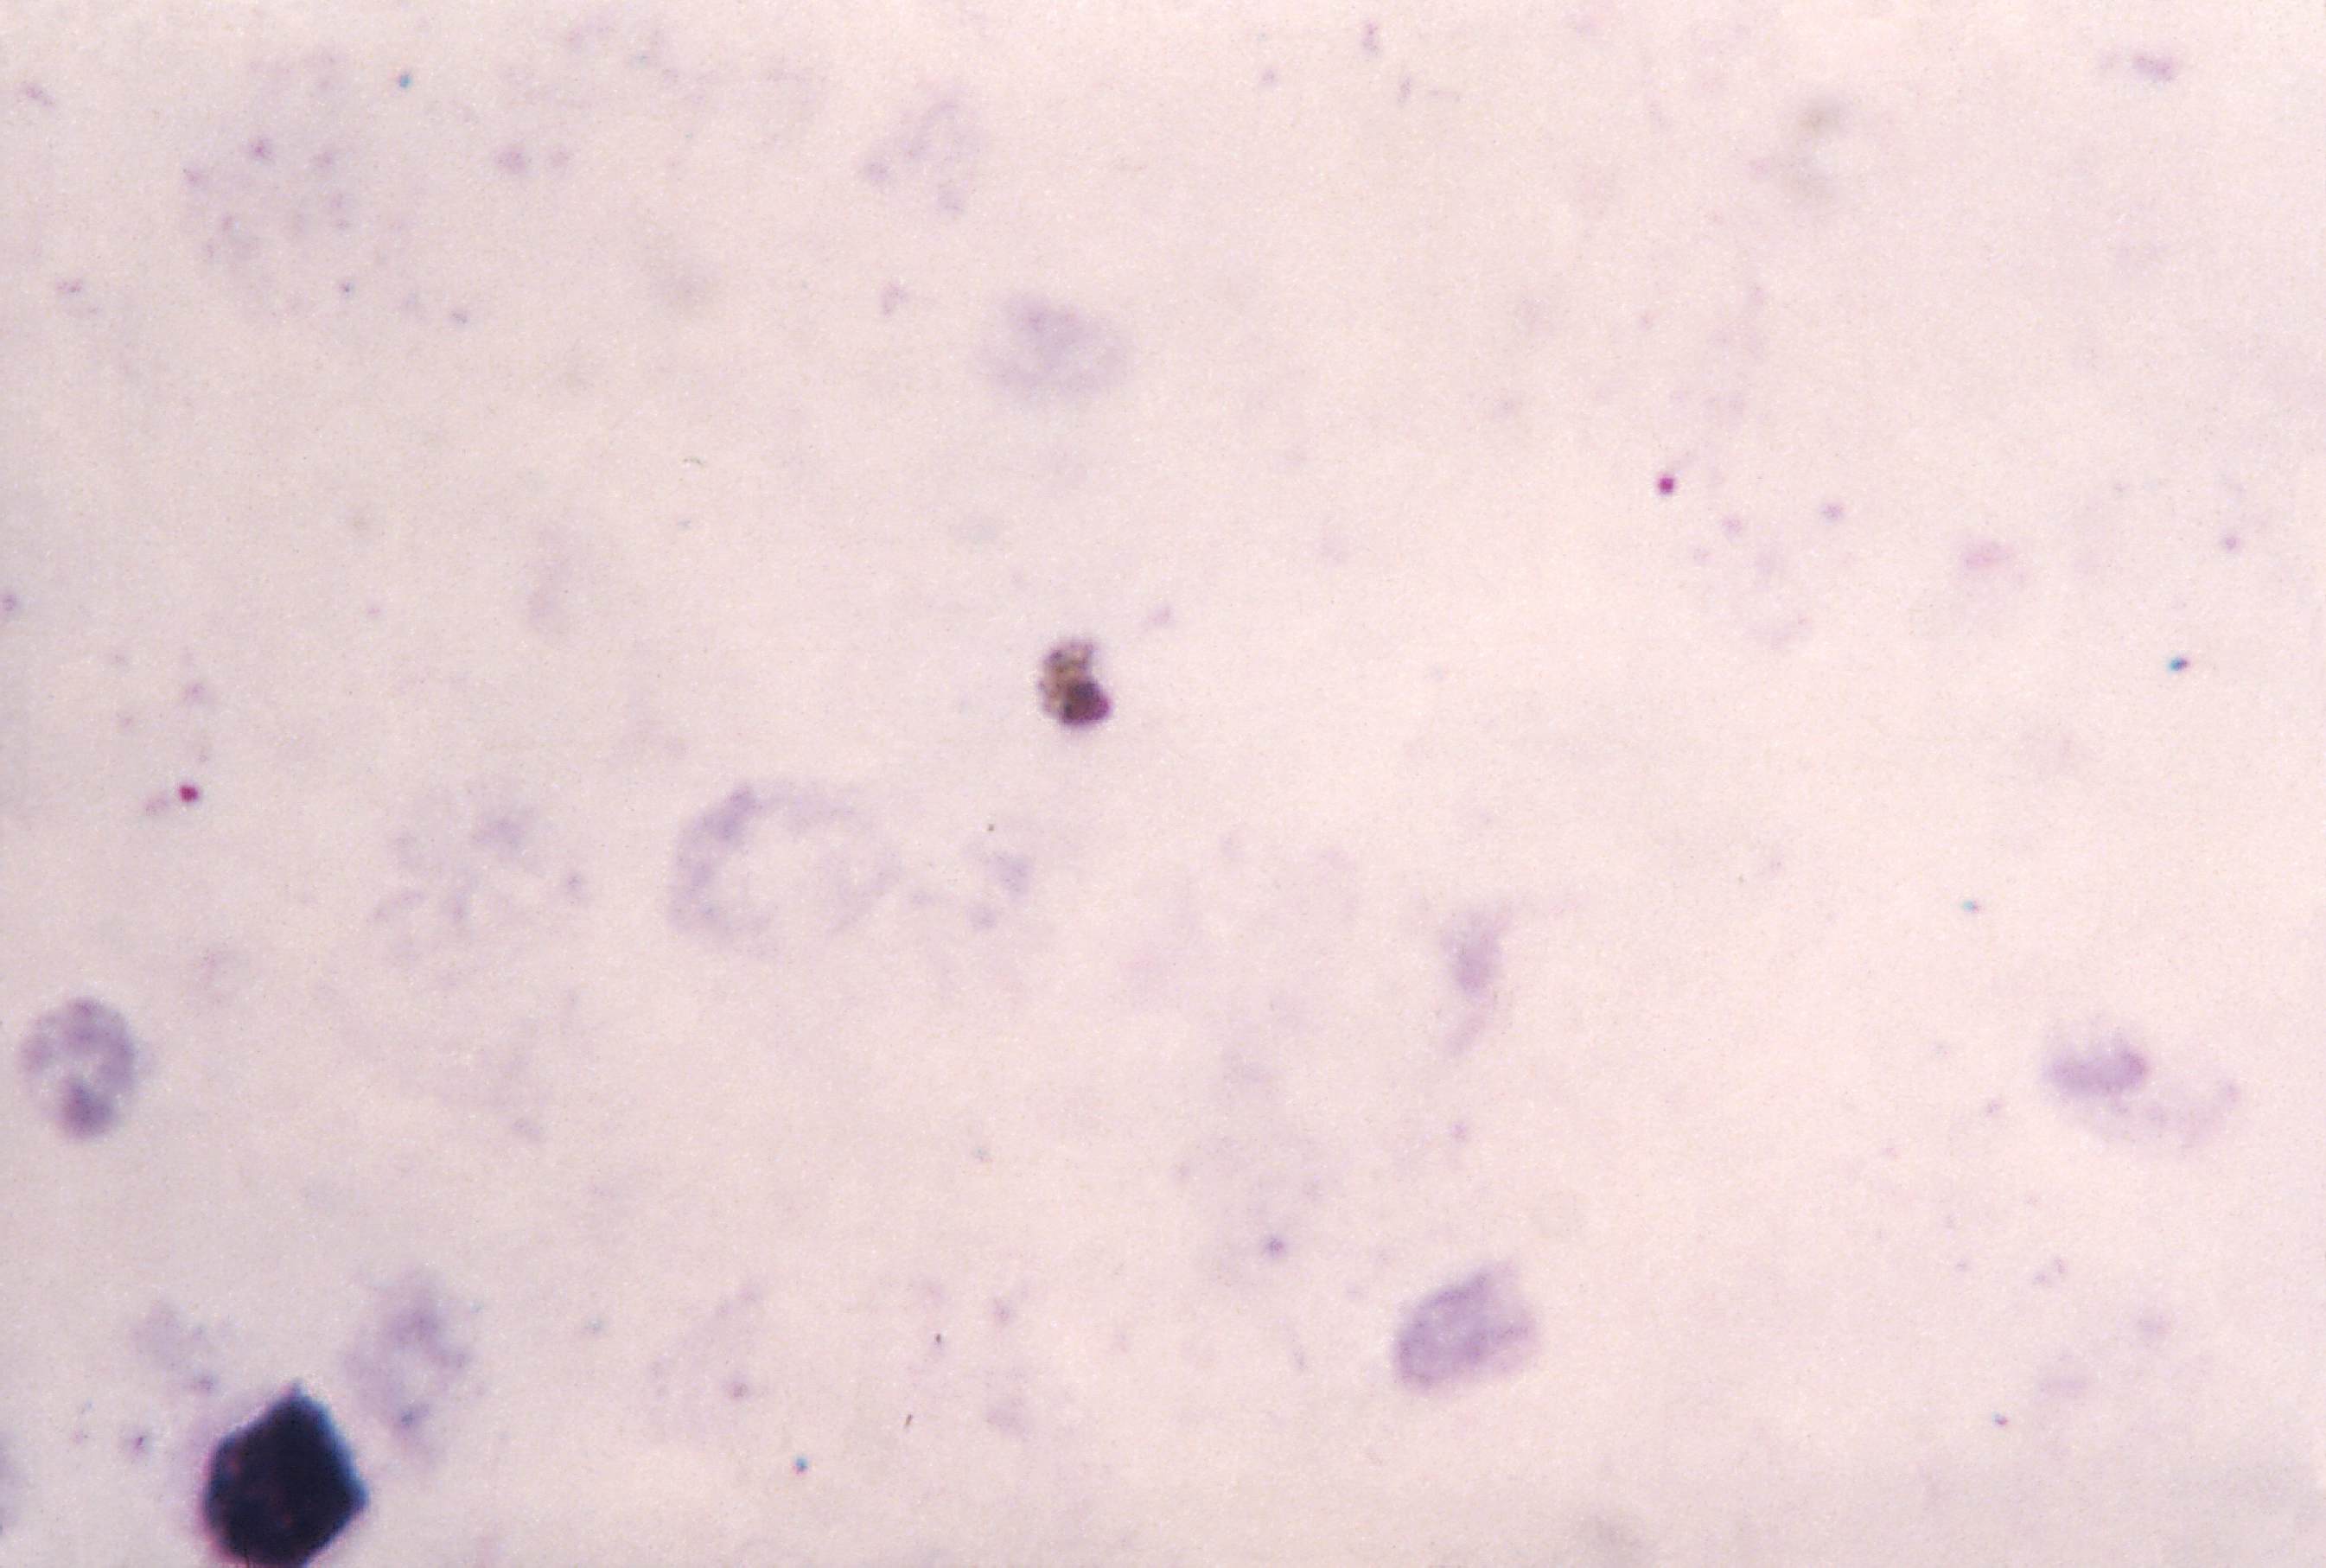 Многочисленные мелкие тельца. Цитоплазма фото под микроскопом. P malariae gametocyte. Обои цитоплазма кровь. Цитоплазма серо-голубого, дымчатого цвета характерна для.